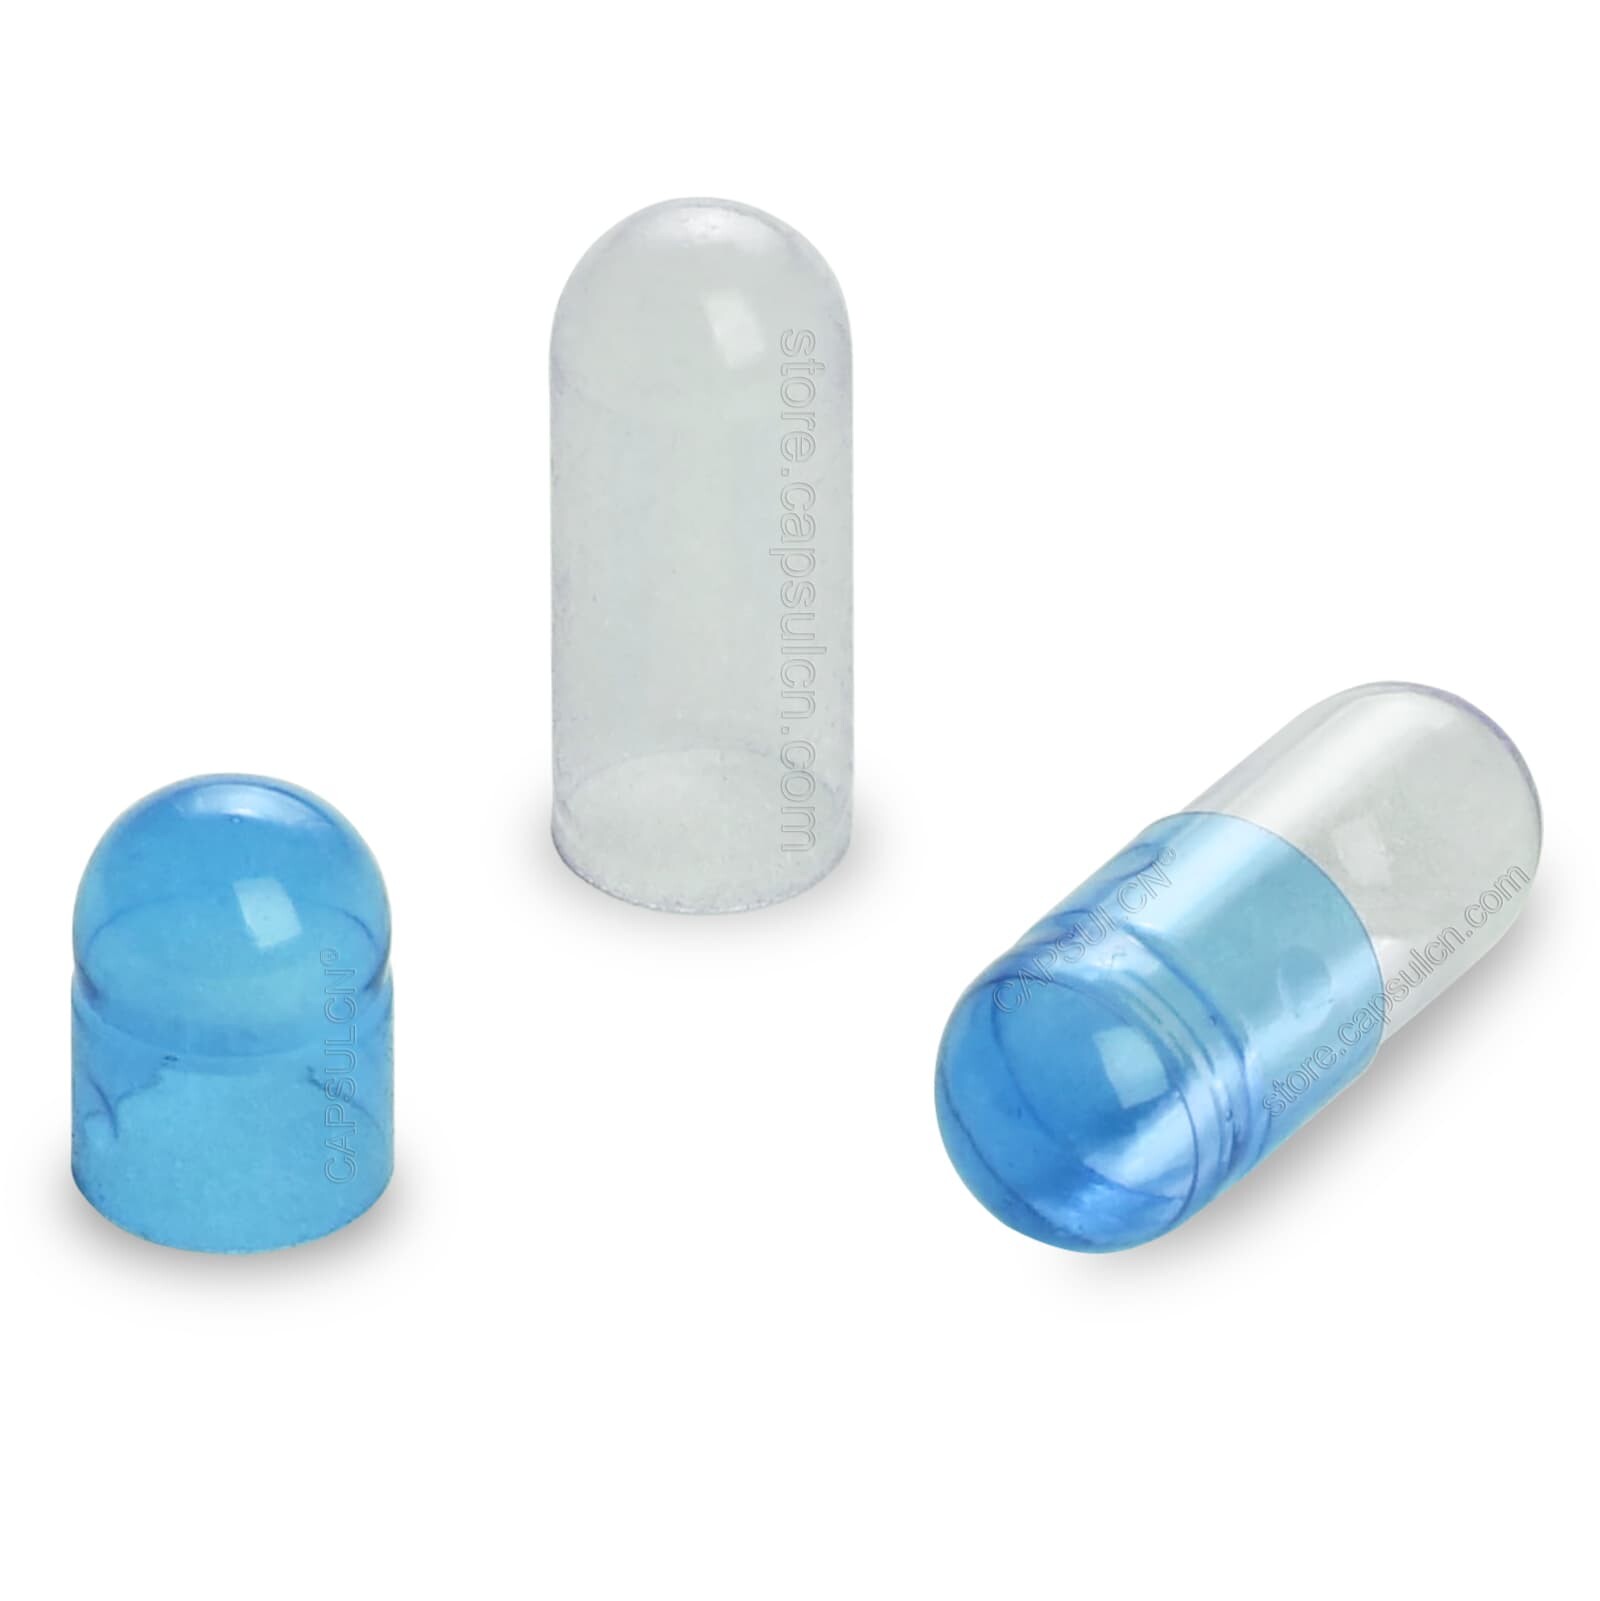 capsulcn blue gelatin capsules